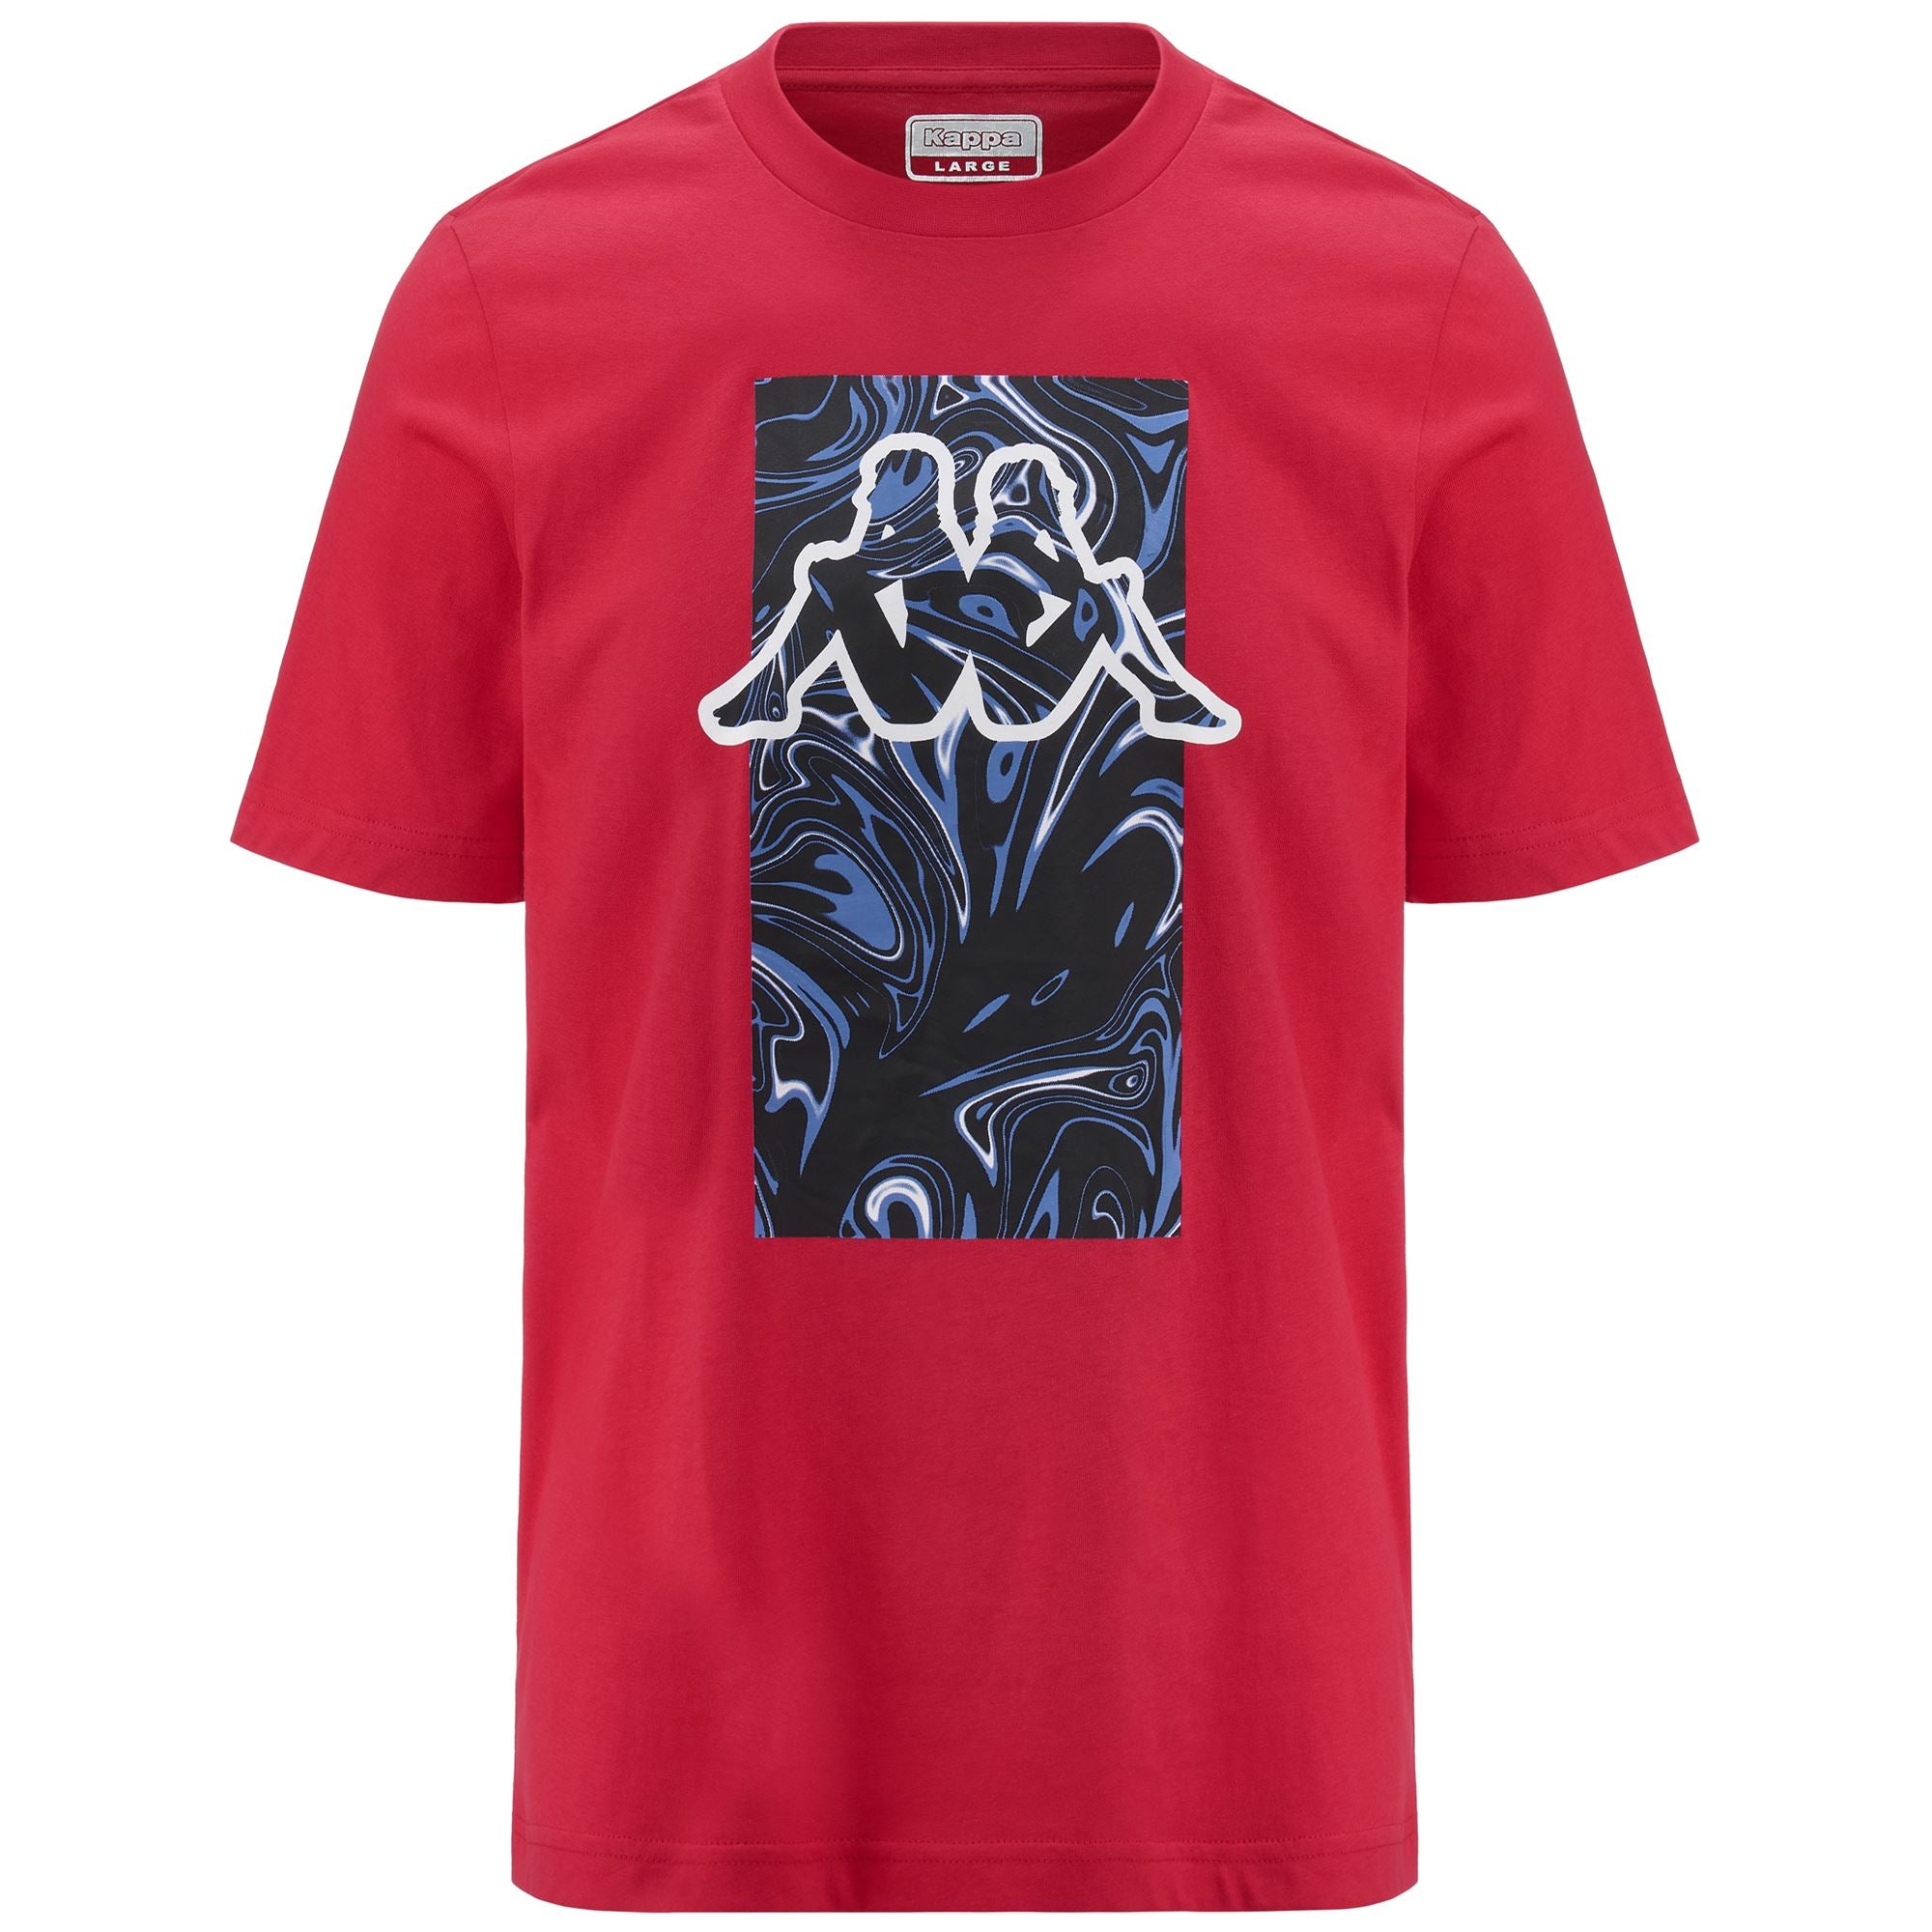 Kappa - Kappa - Camisetas y tops, Camisa - Hombre - logo ezio